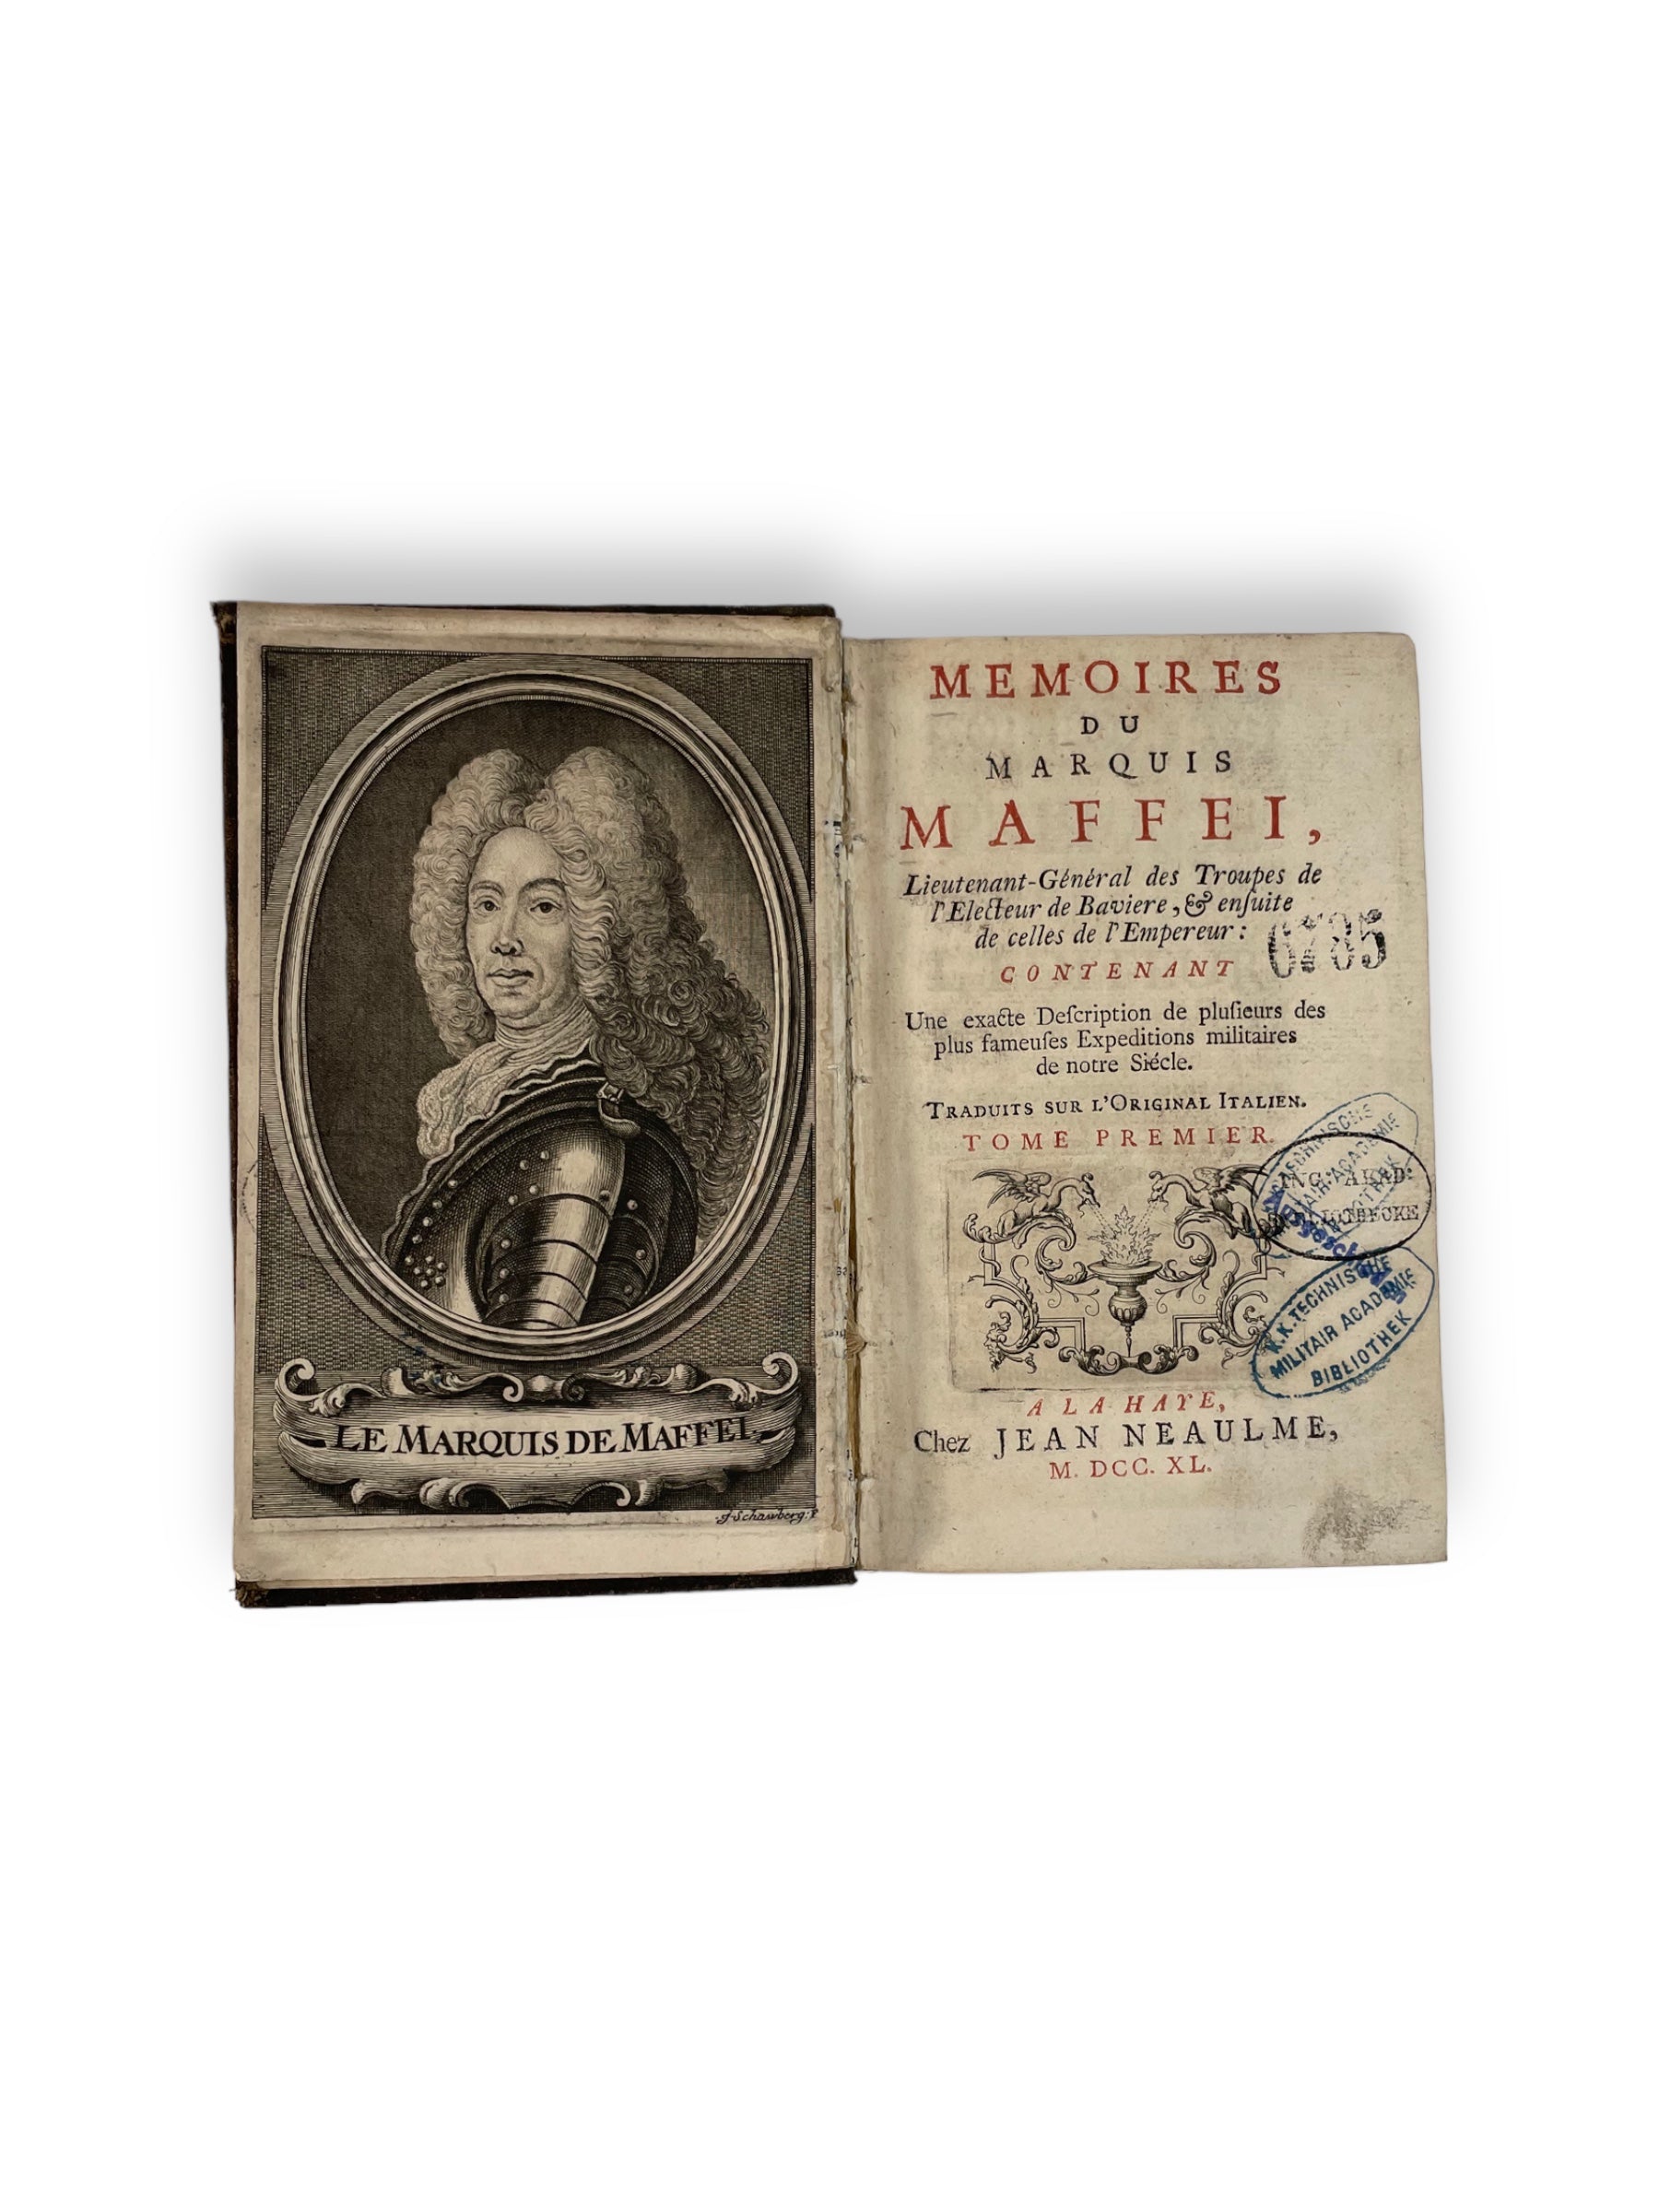 "Memoires du marquis Maffei" by Jean Neaulme in A La Haye in 1740